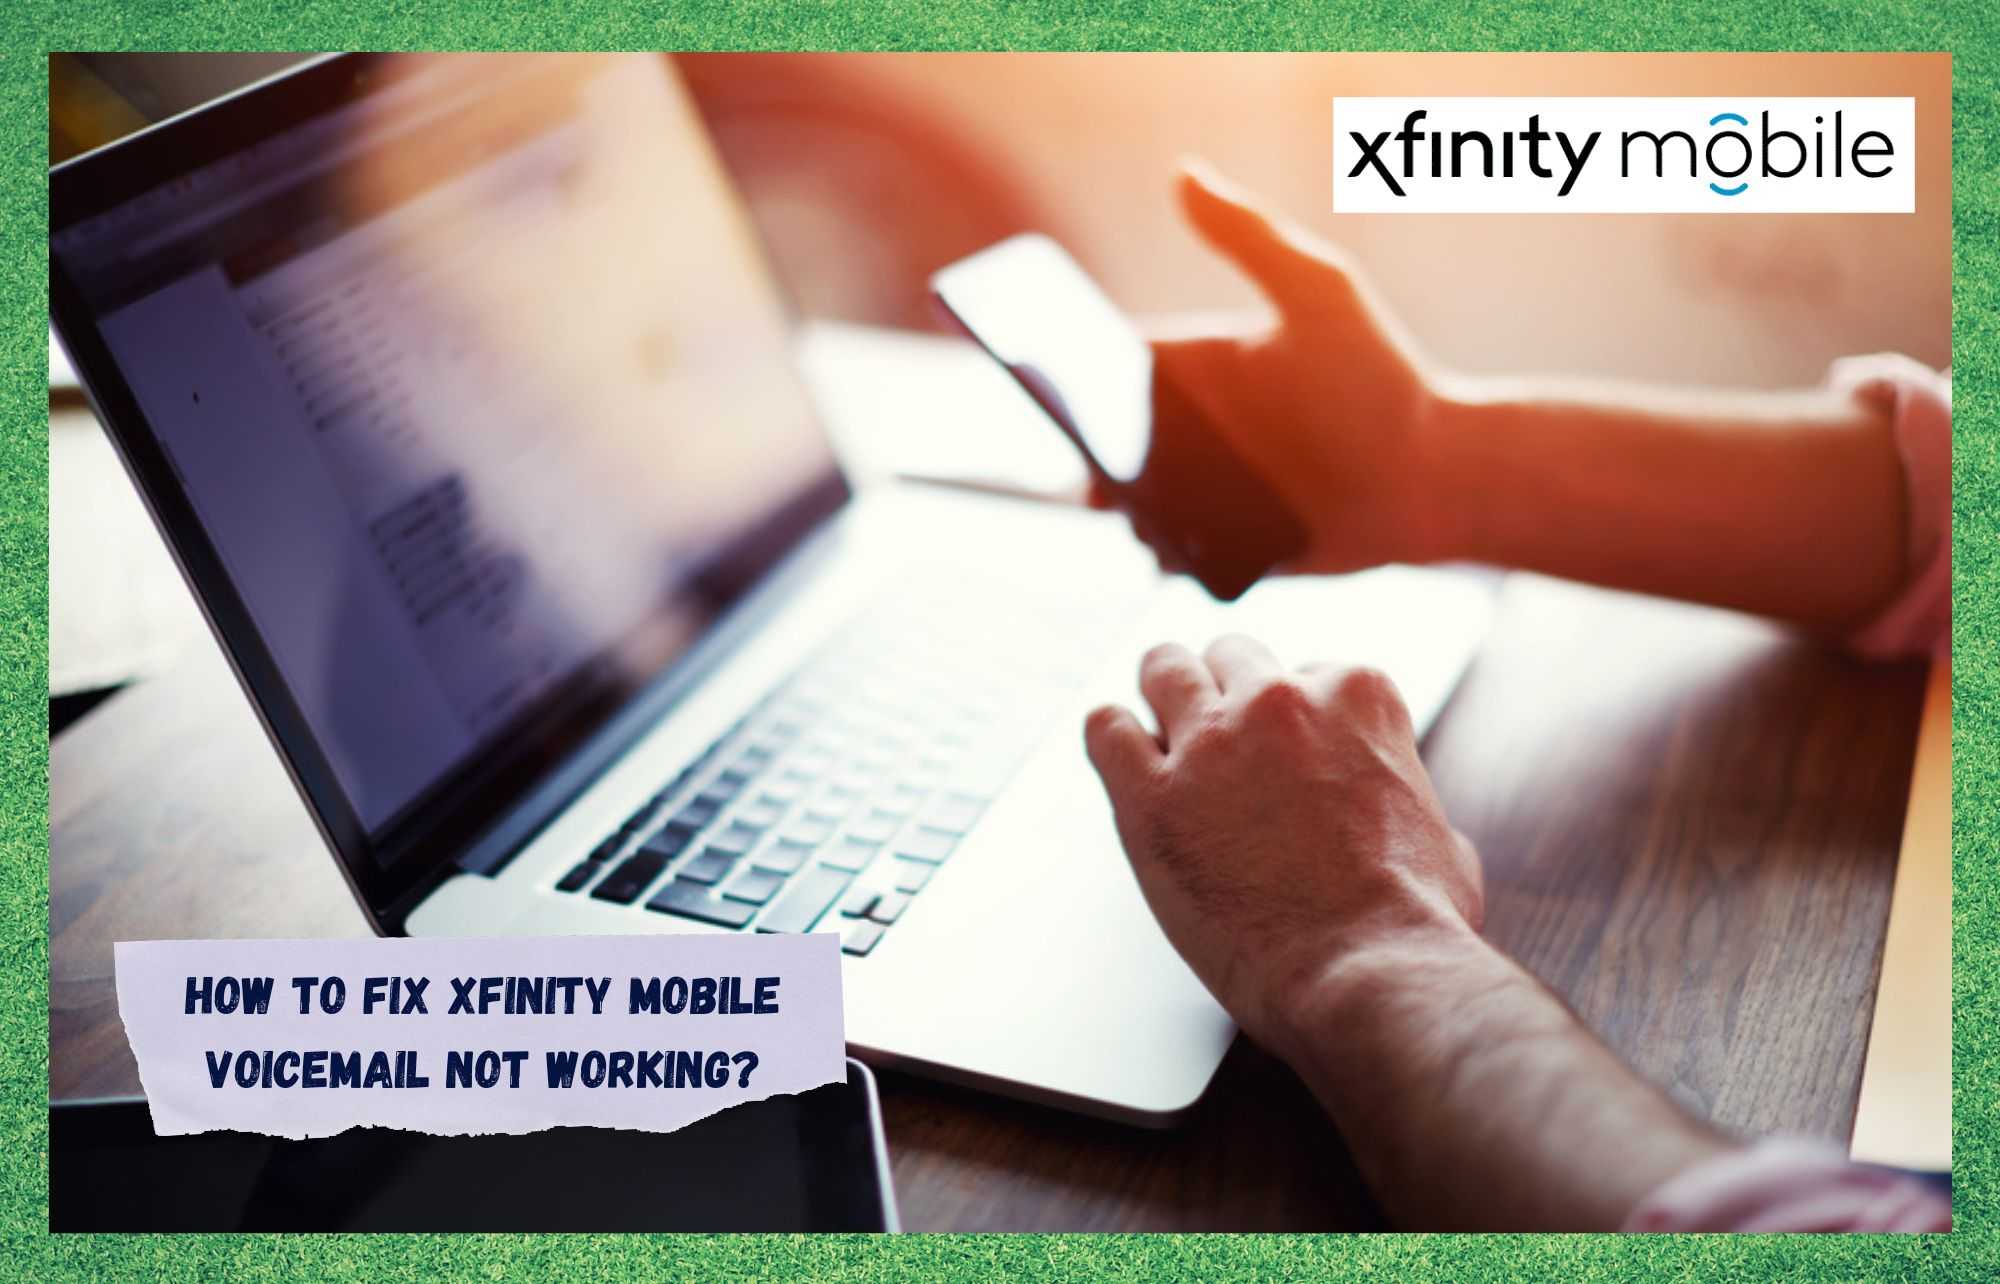 Xfinity موبائل وائس میل کام نہیں کر رہا ہے: ٹھیک کرنے کے 6 طریقے